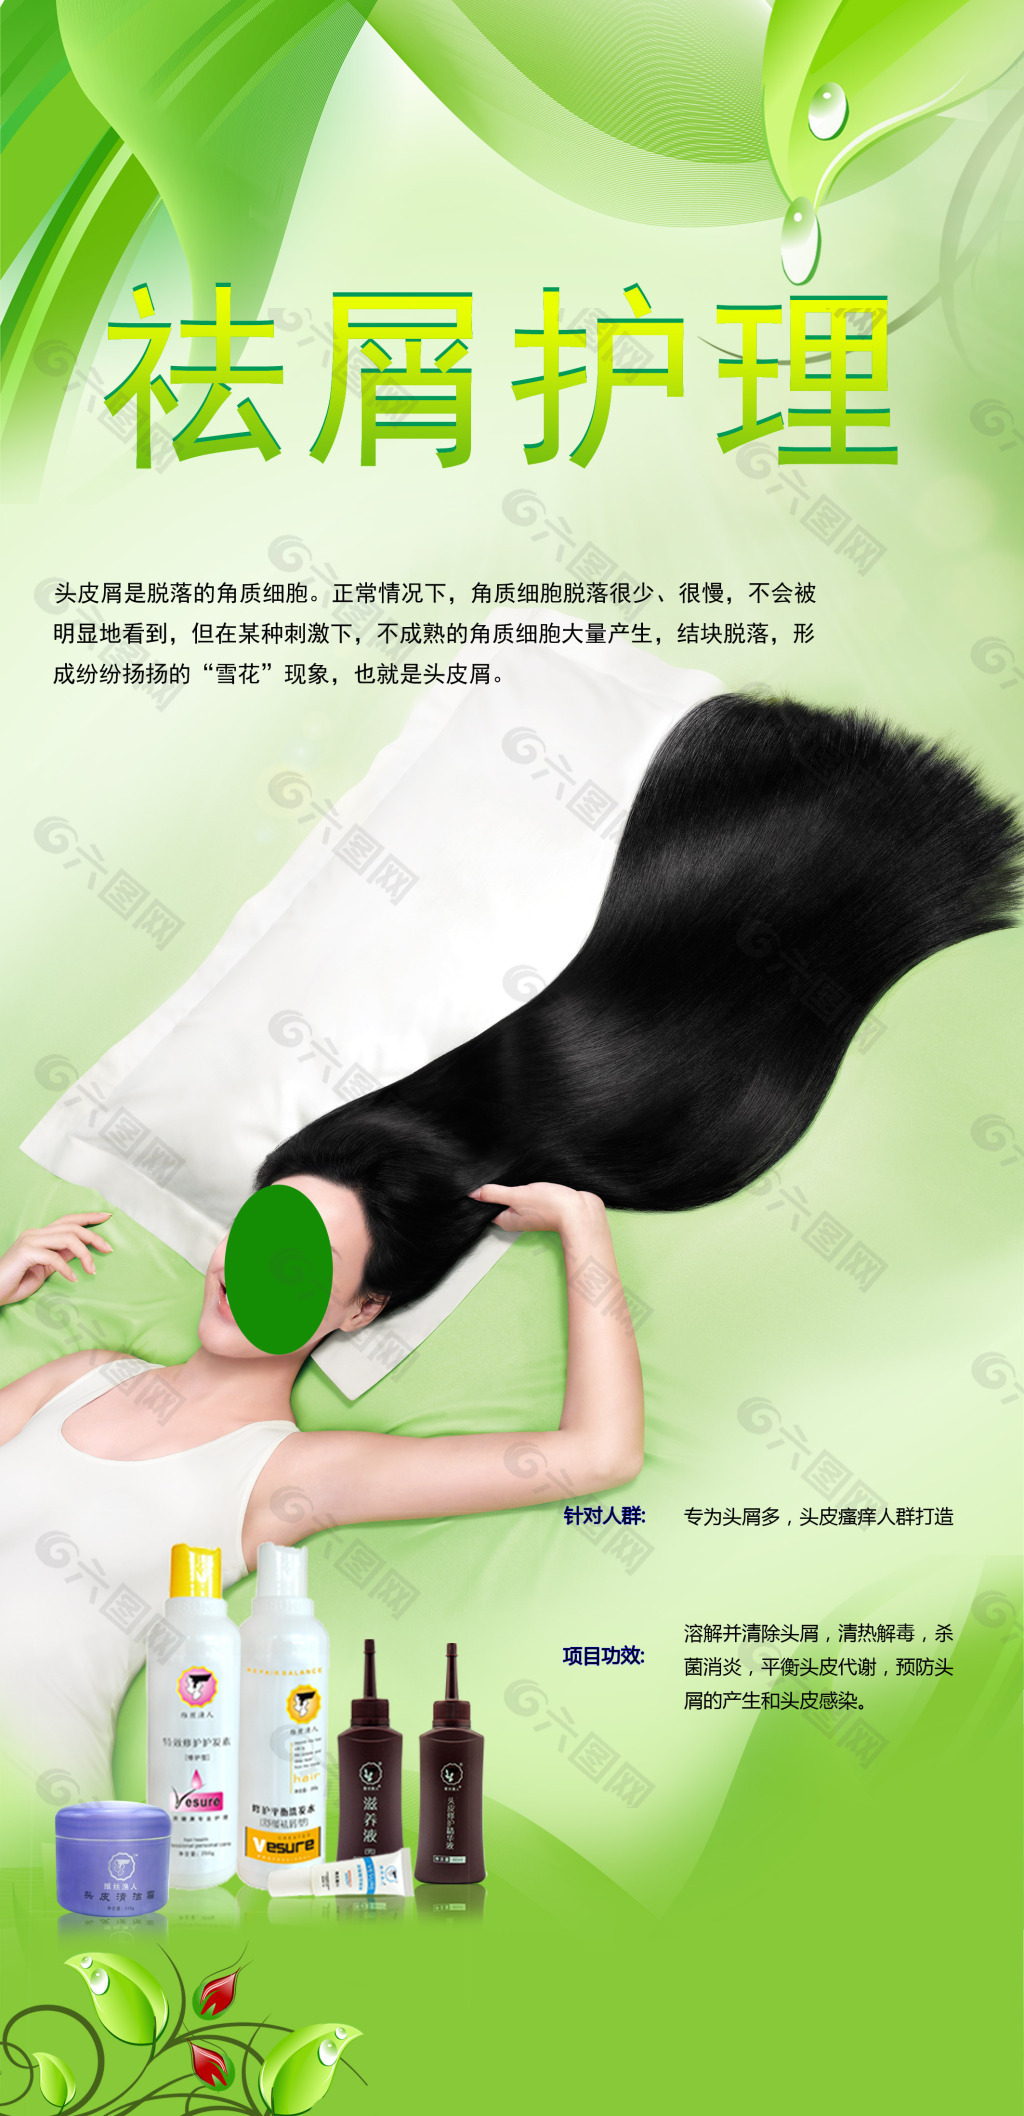 首页 海报 其他海报设计 去屑护理头发 当前位置: 首页 